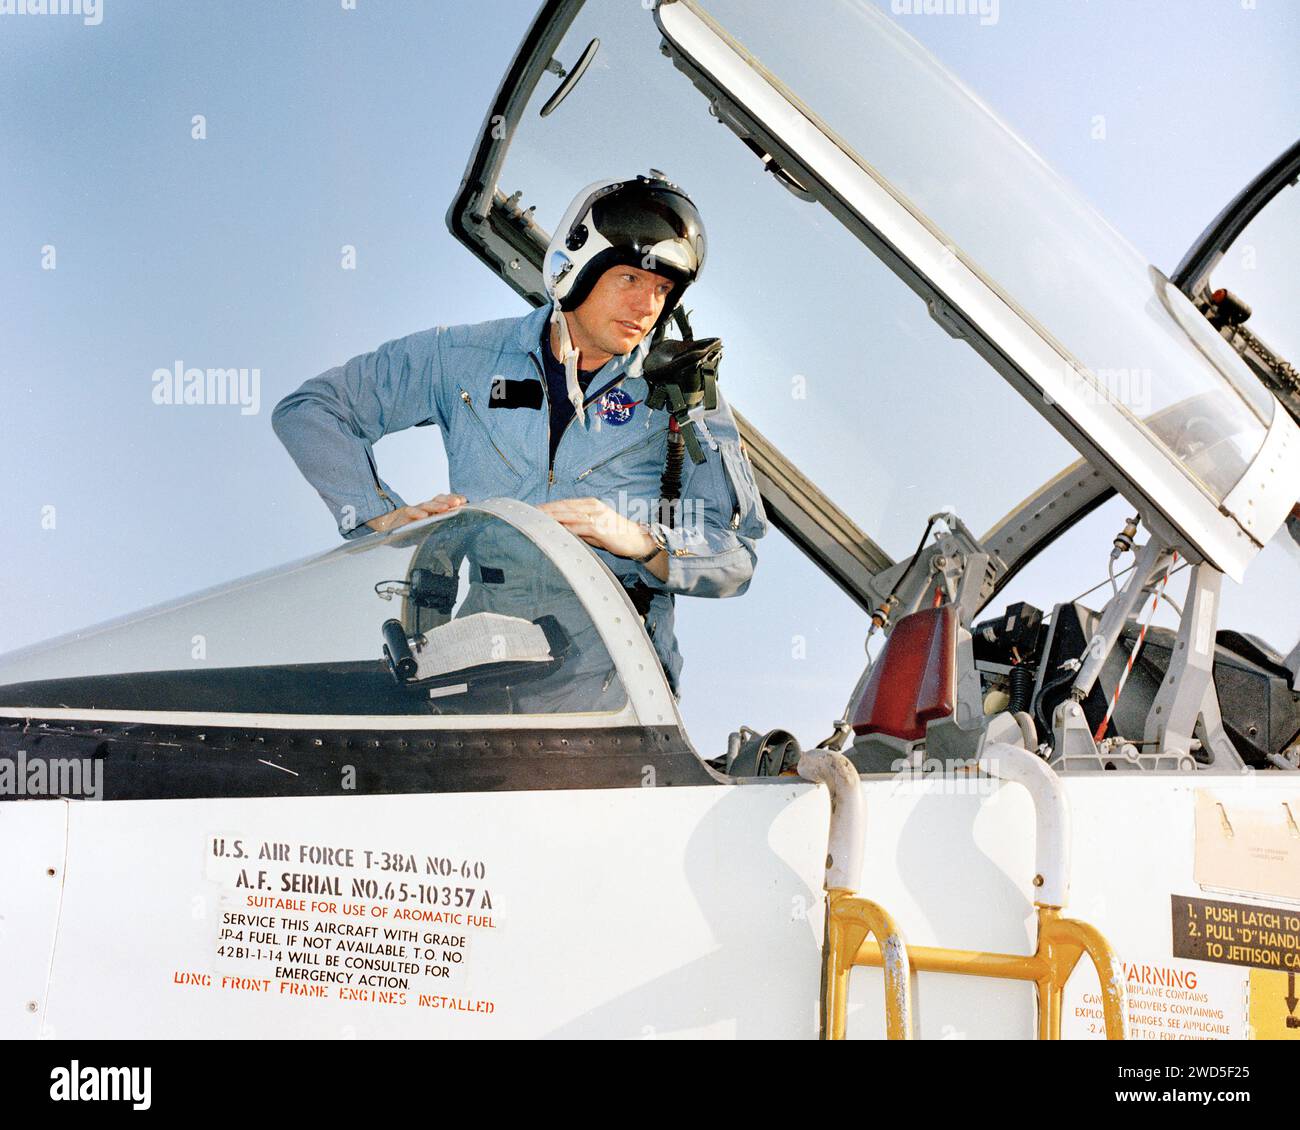 Neil A. Armstrong, comandante della missione Apollo 11, salendo dal jet T-38 al suo arrivo alla Patrick Air Force base in preparazione della prima missione di atterraggio lunare con equipaggio, Brevard County, Florida, USA, NASA, 9 luglio 1969 Foto Stock